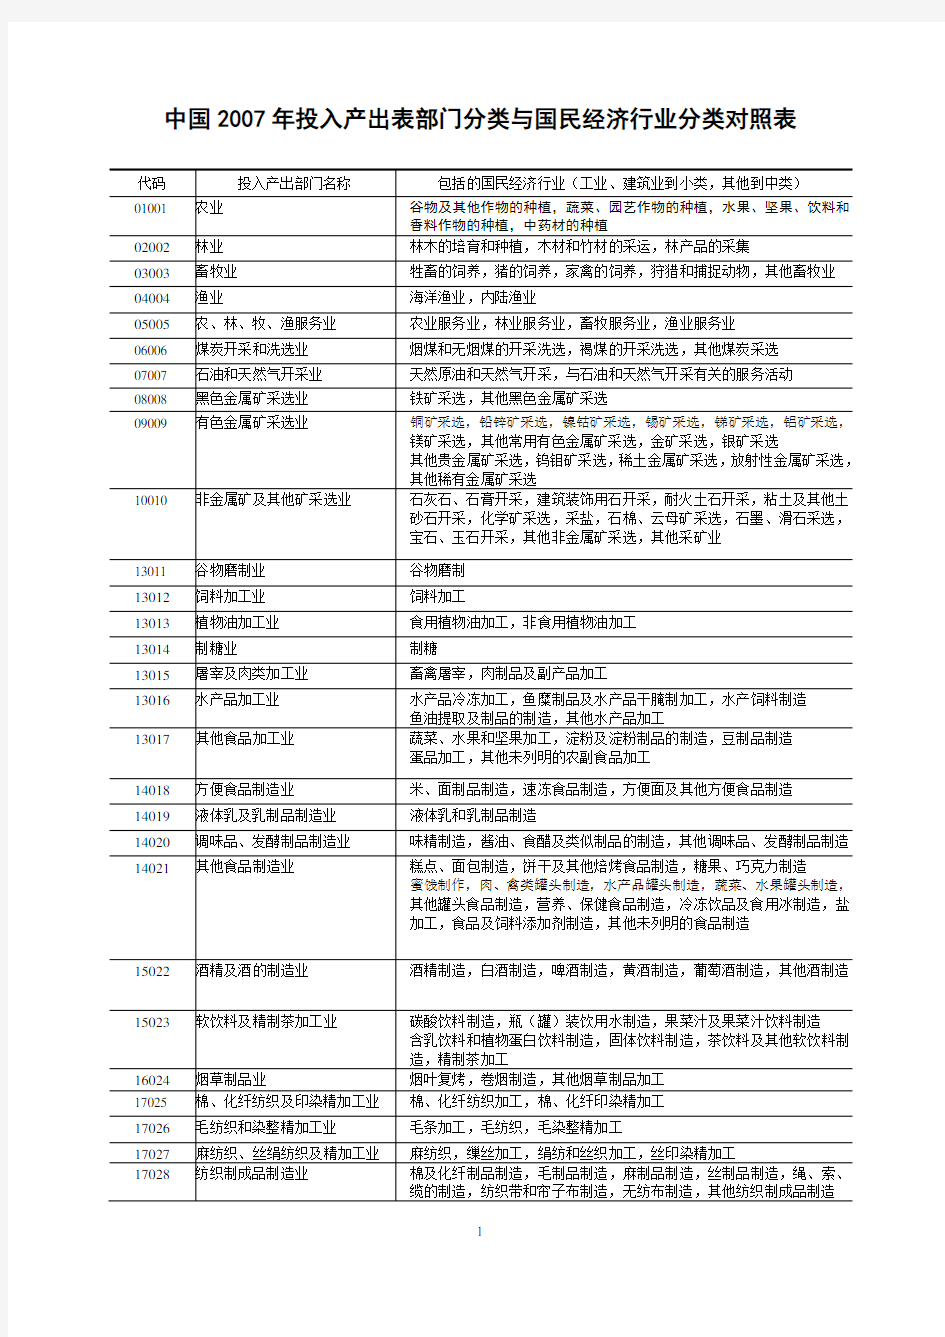 中国投入产出表部门分类与国民经济行业分类对照表